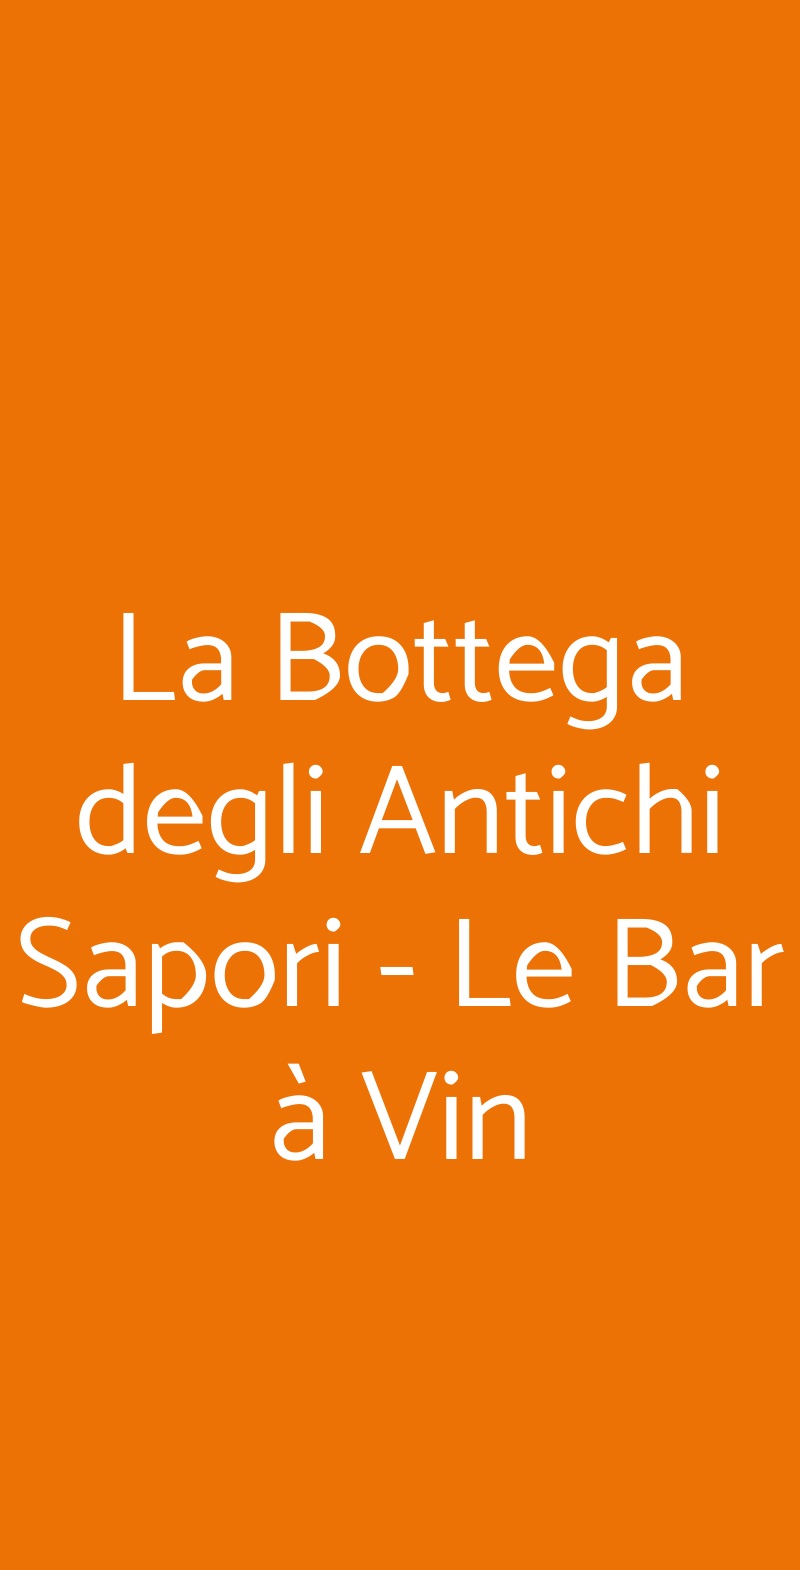 La Bottega degli Antichi Sapori - Le Bar à Vin Aosta menù 1 pagina